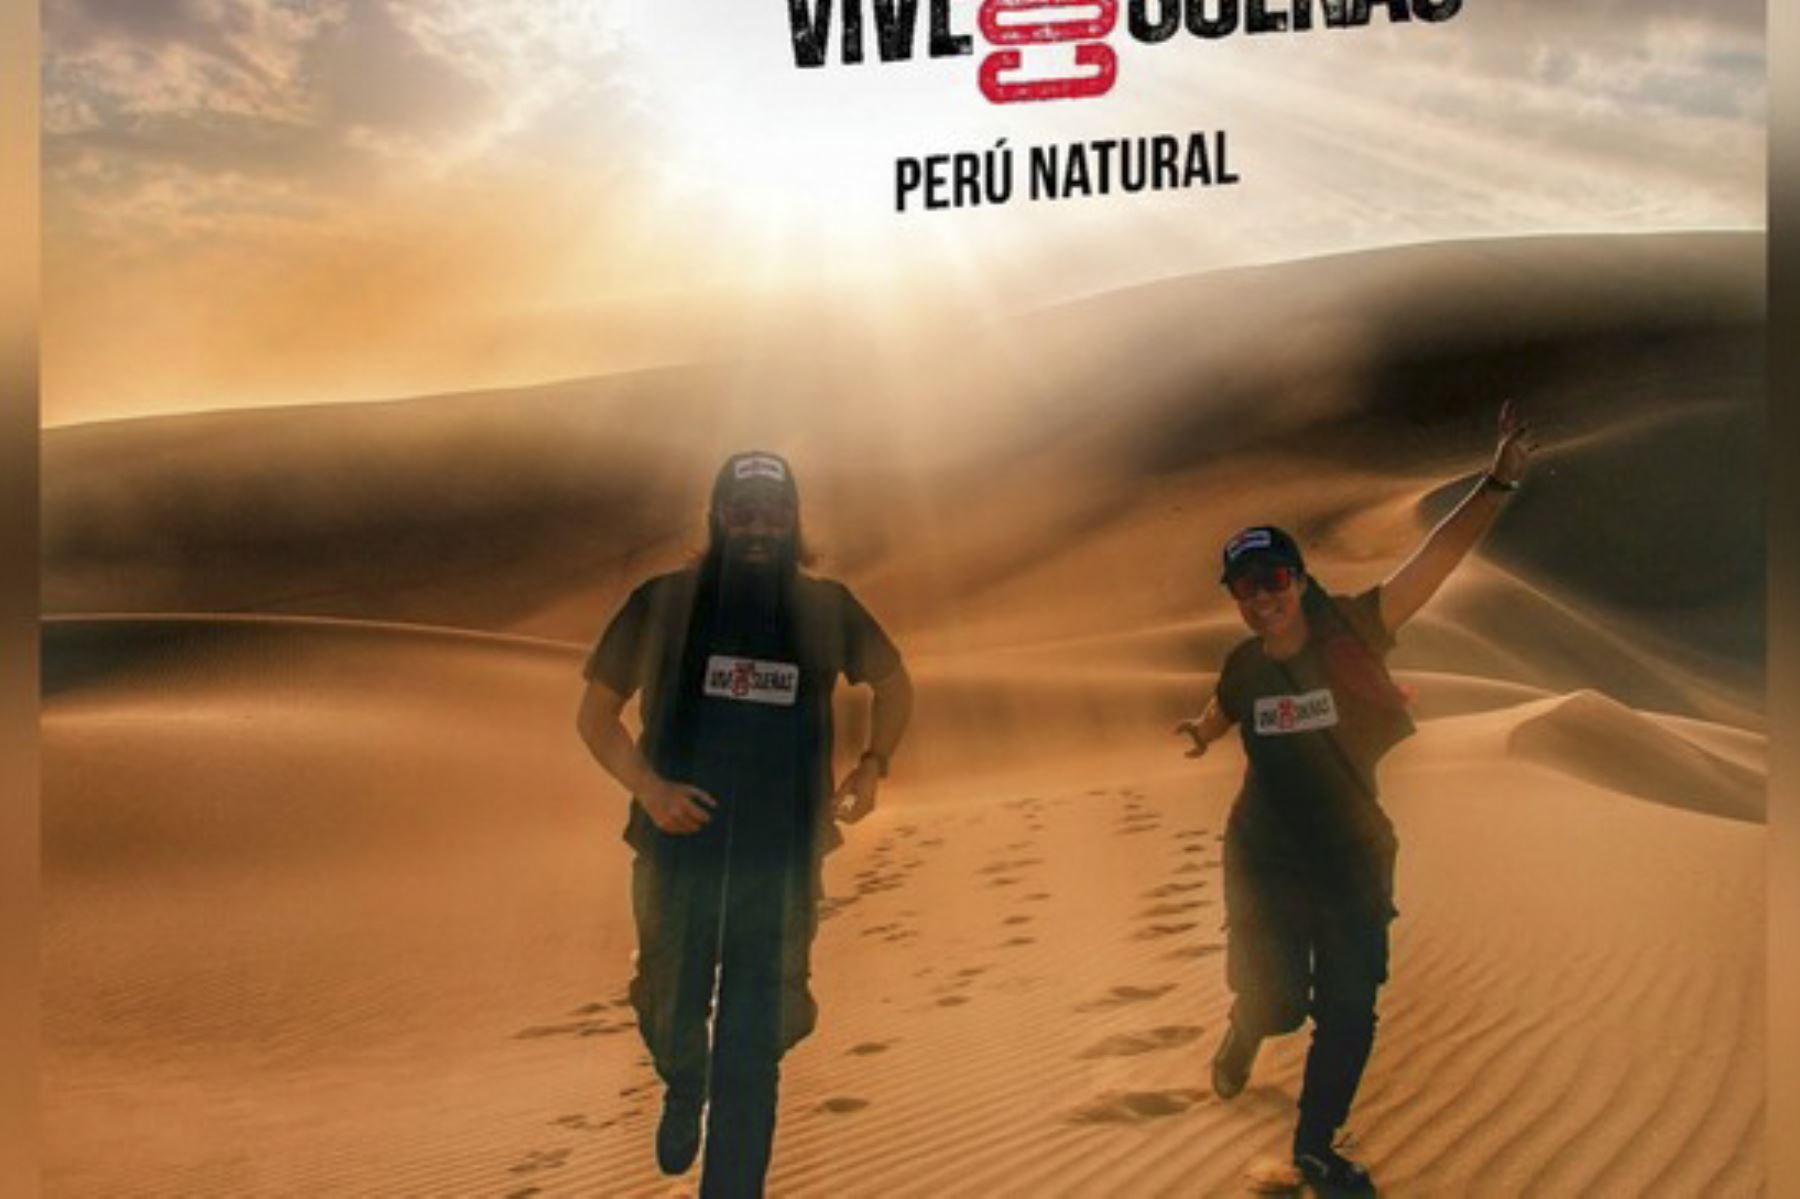 La serie “ViveComoSueñas, Perú Natural” difundirá información sobre 25 áreas naturales protegidas. Foto: ANDINA/Difusión